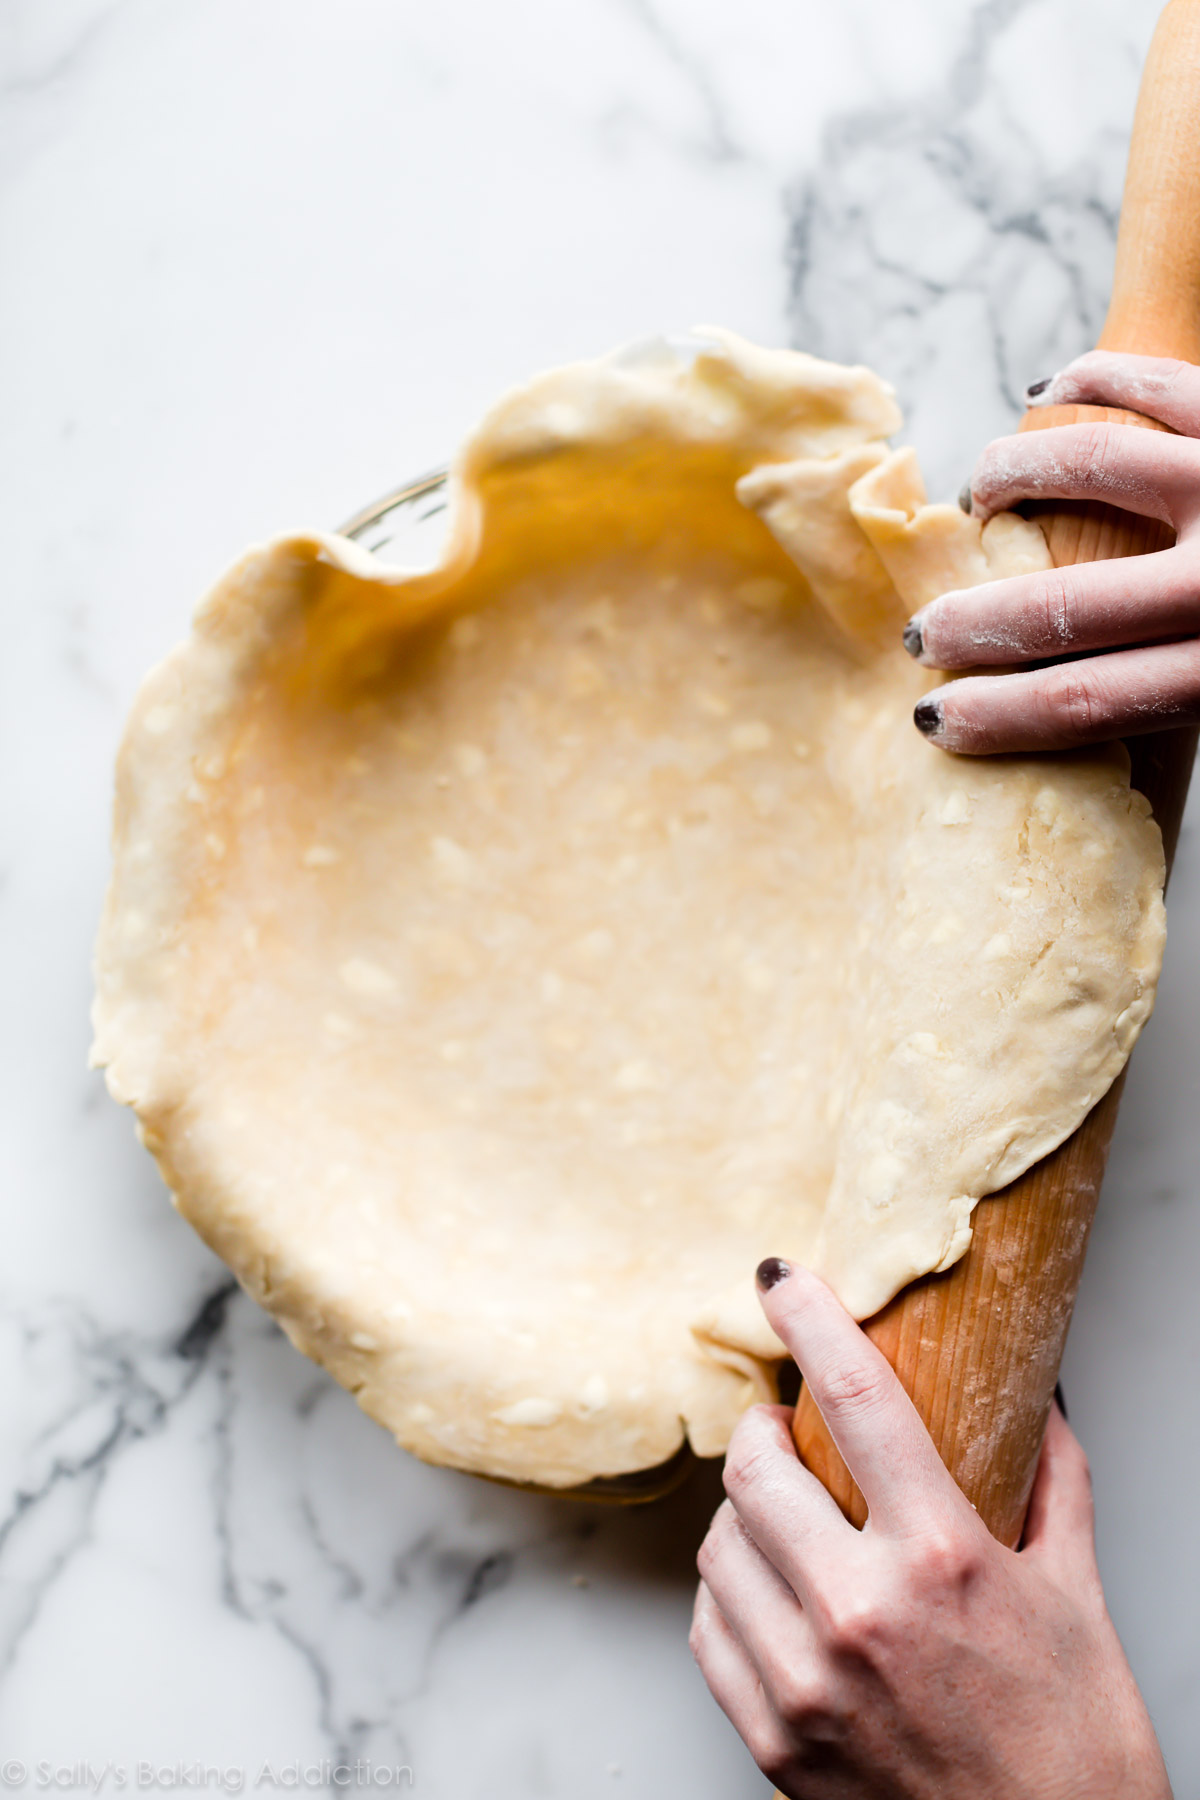 La meilleure recette de croûte de tarte au beurre floconneuse est super beurrée et facile à travailler! Recette et tutoriel vidéo sur sallysbakingaddiction.com